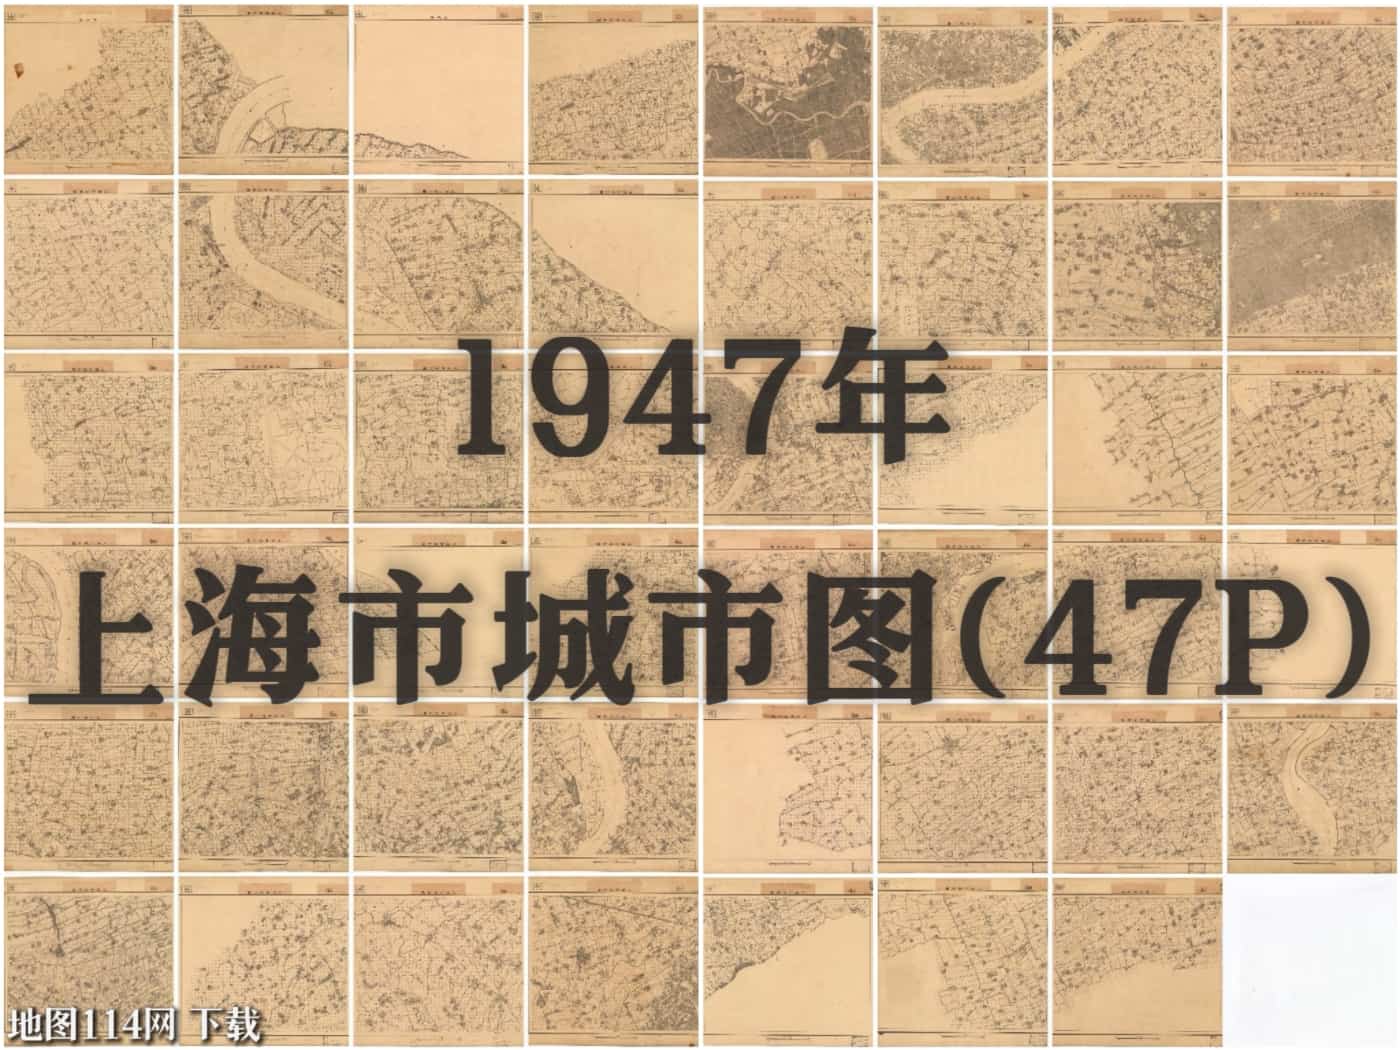 1947年上海市城市图(47P).jpg